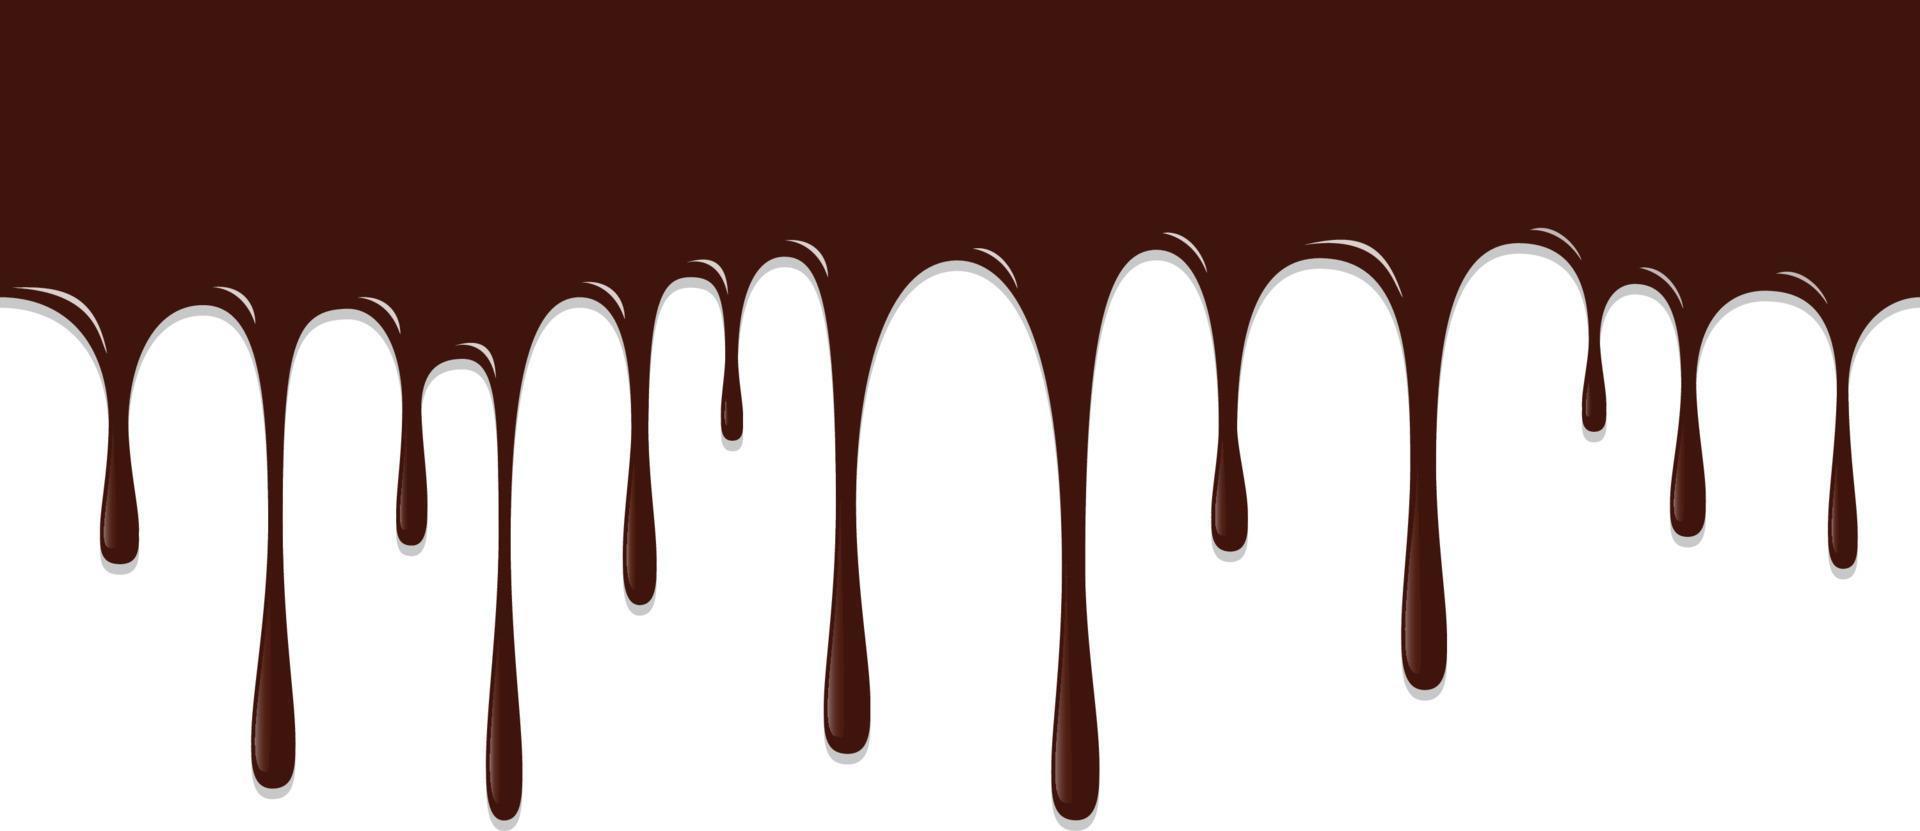 gotejamento de chocolate, ilustração vetorial de fundo de chocolate vetor